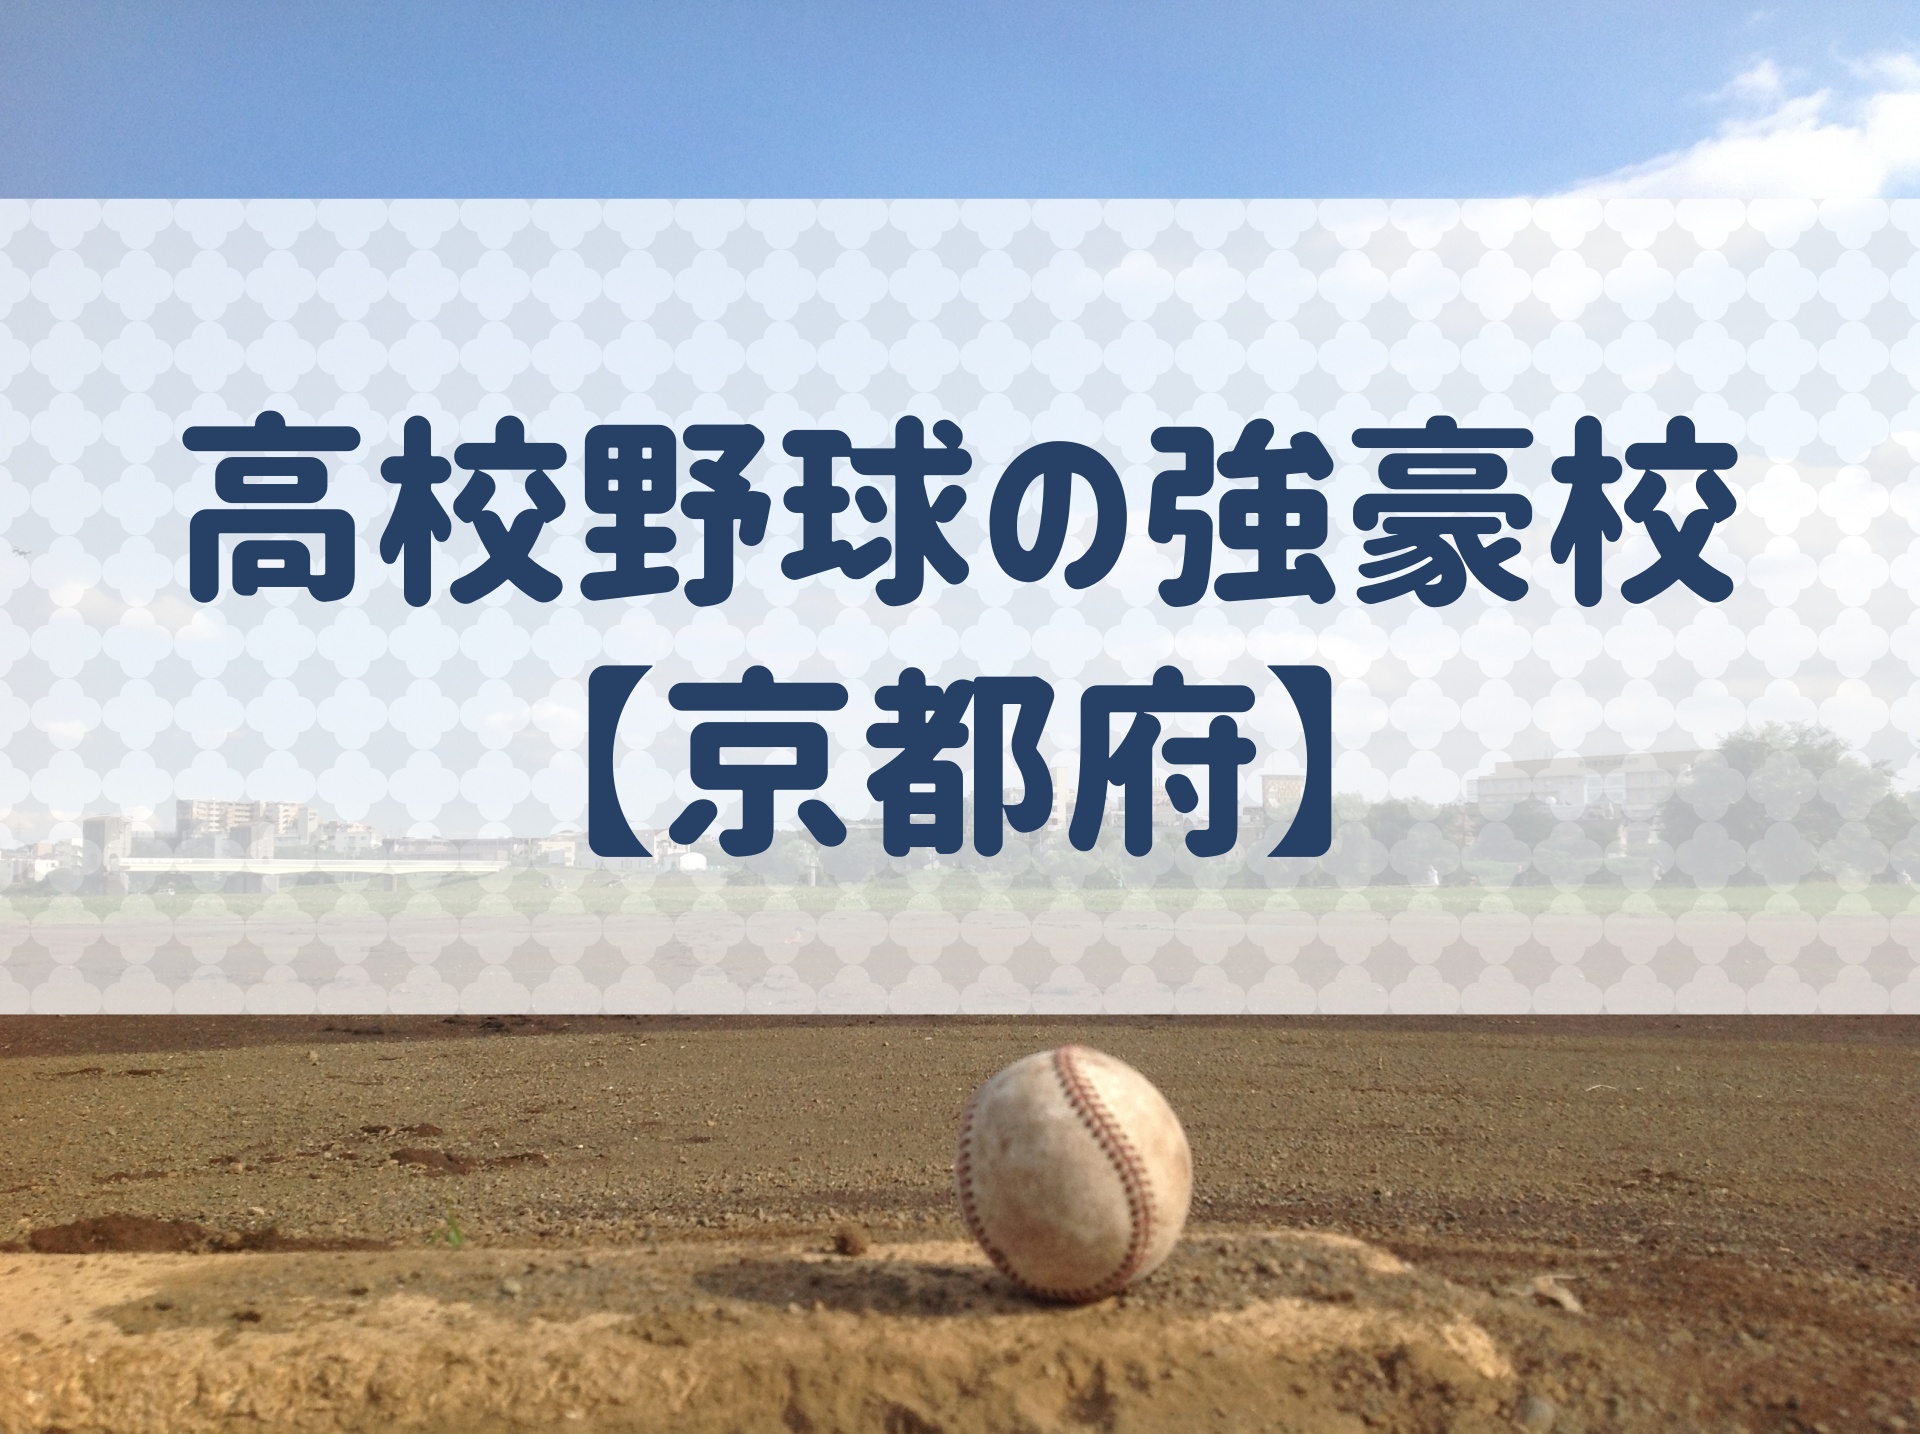 京都府 高校野球の強豪校 特徴と実績などを紹介 野球用語 Net